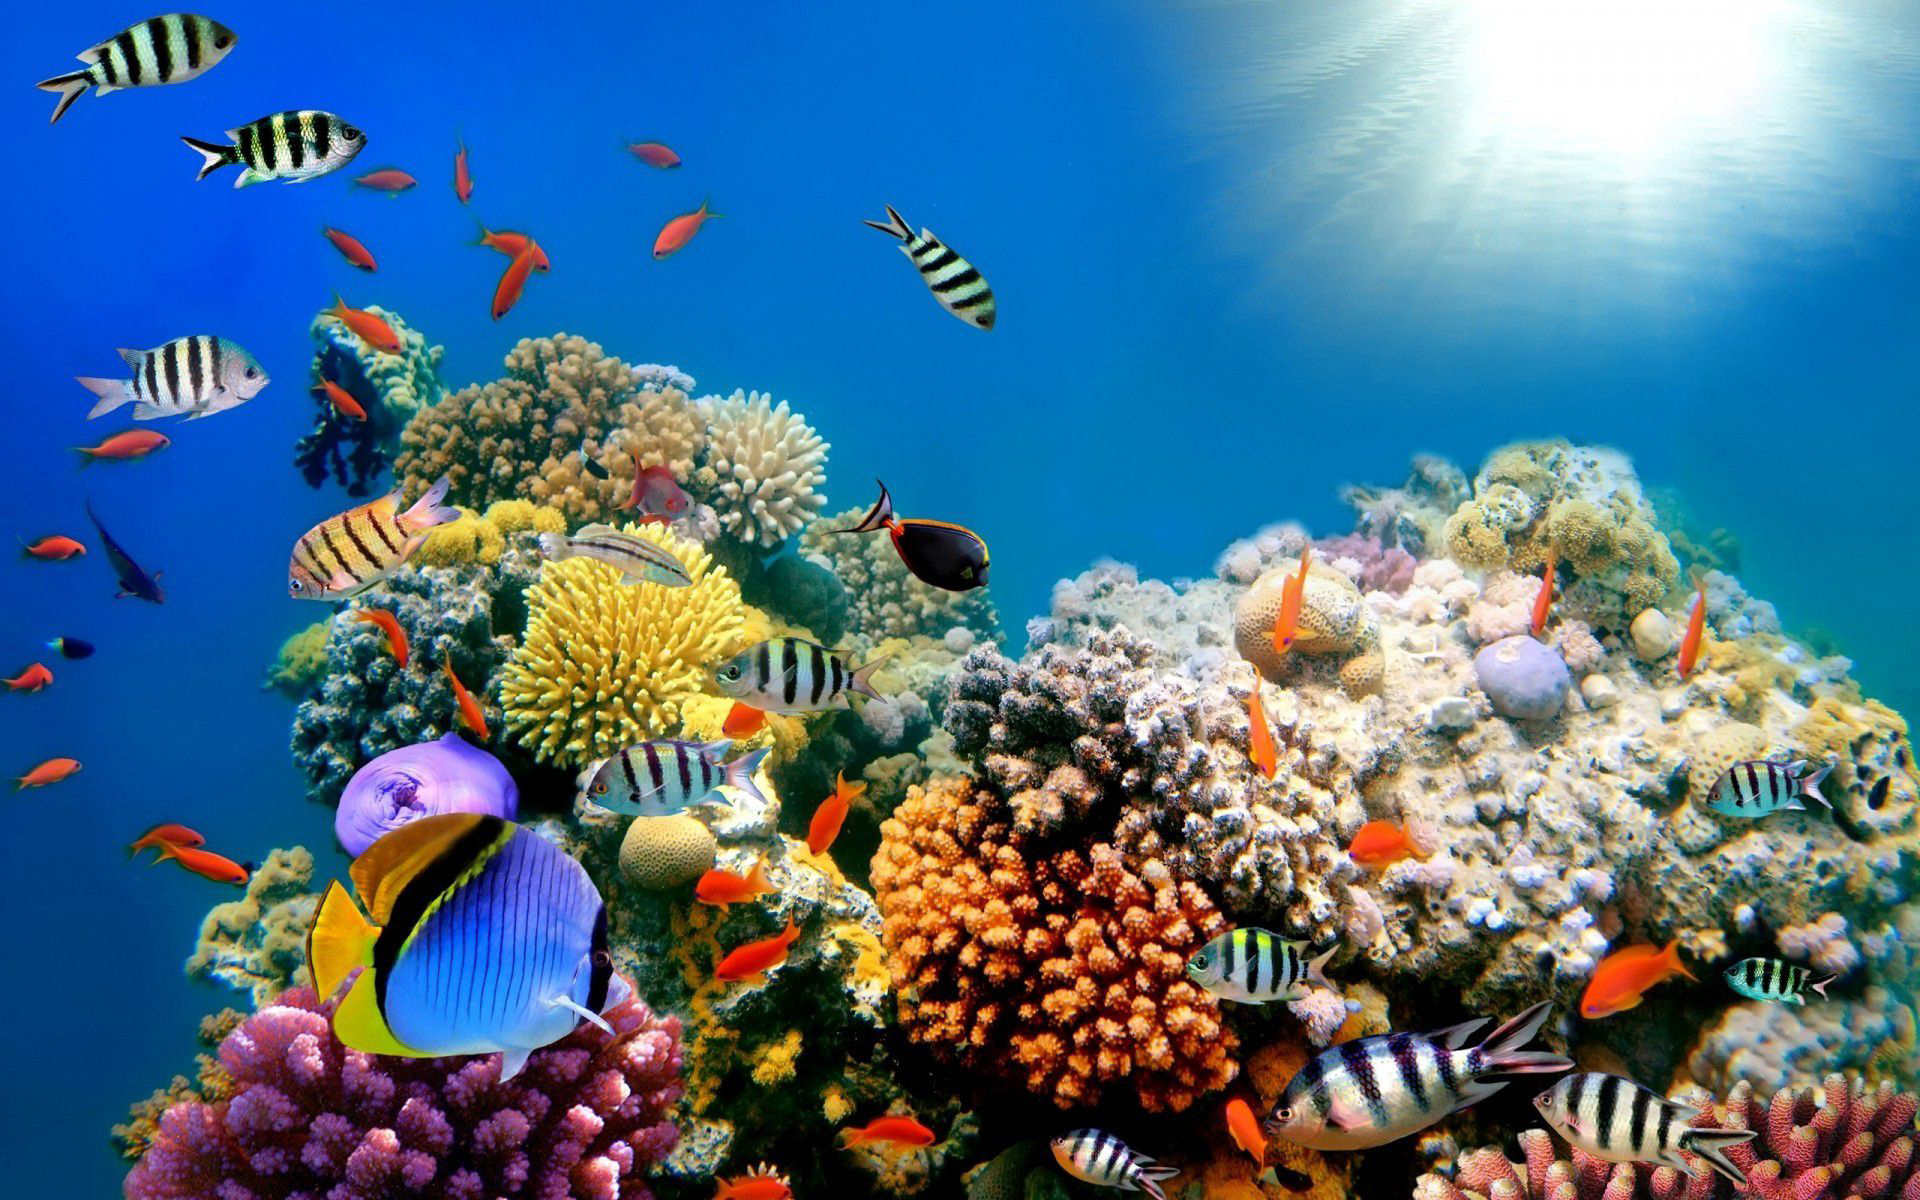 korallenriff tapete hd,riff,korallenriff,korallenrifffische,unter wasser,meeresbiologie